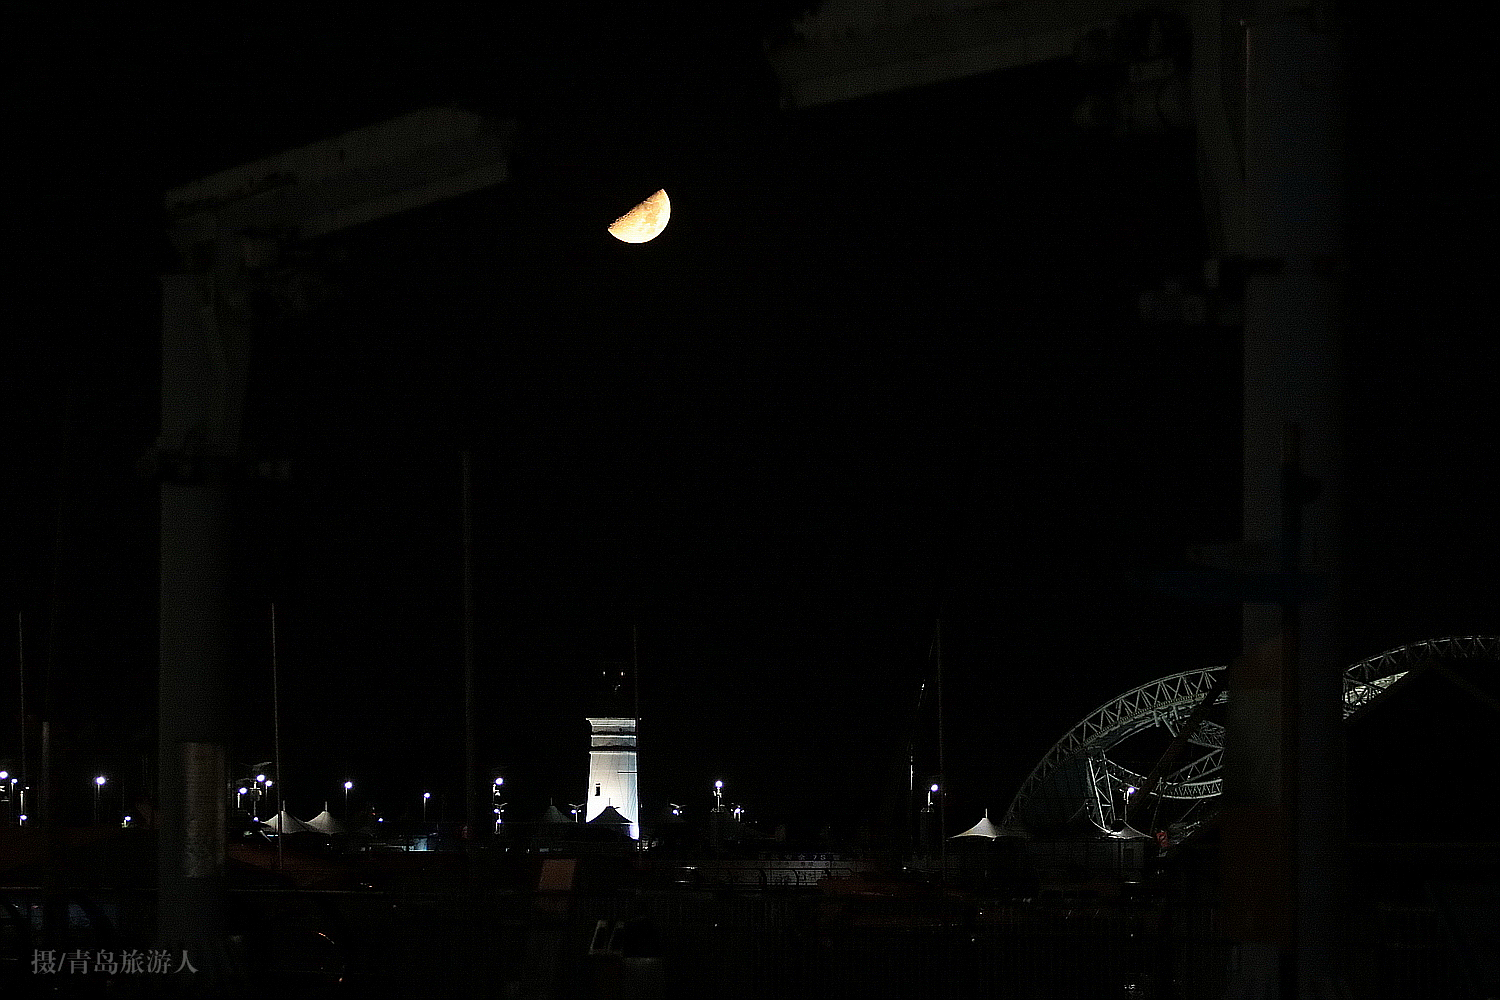 中秋前青岛夜空现清晰半月,一张照片犹如天然字谜